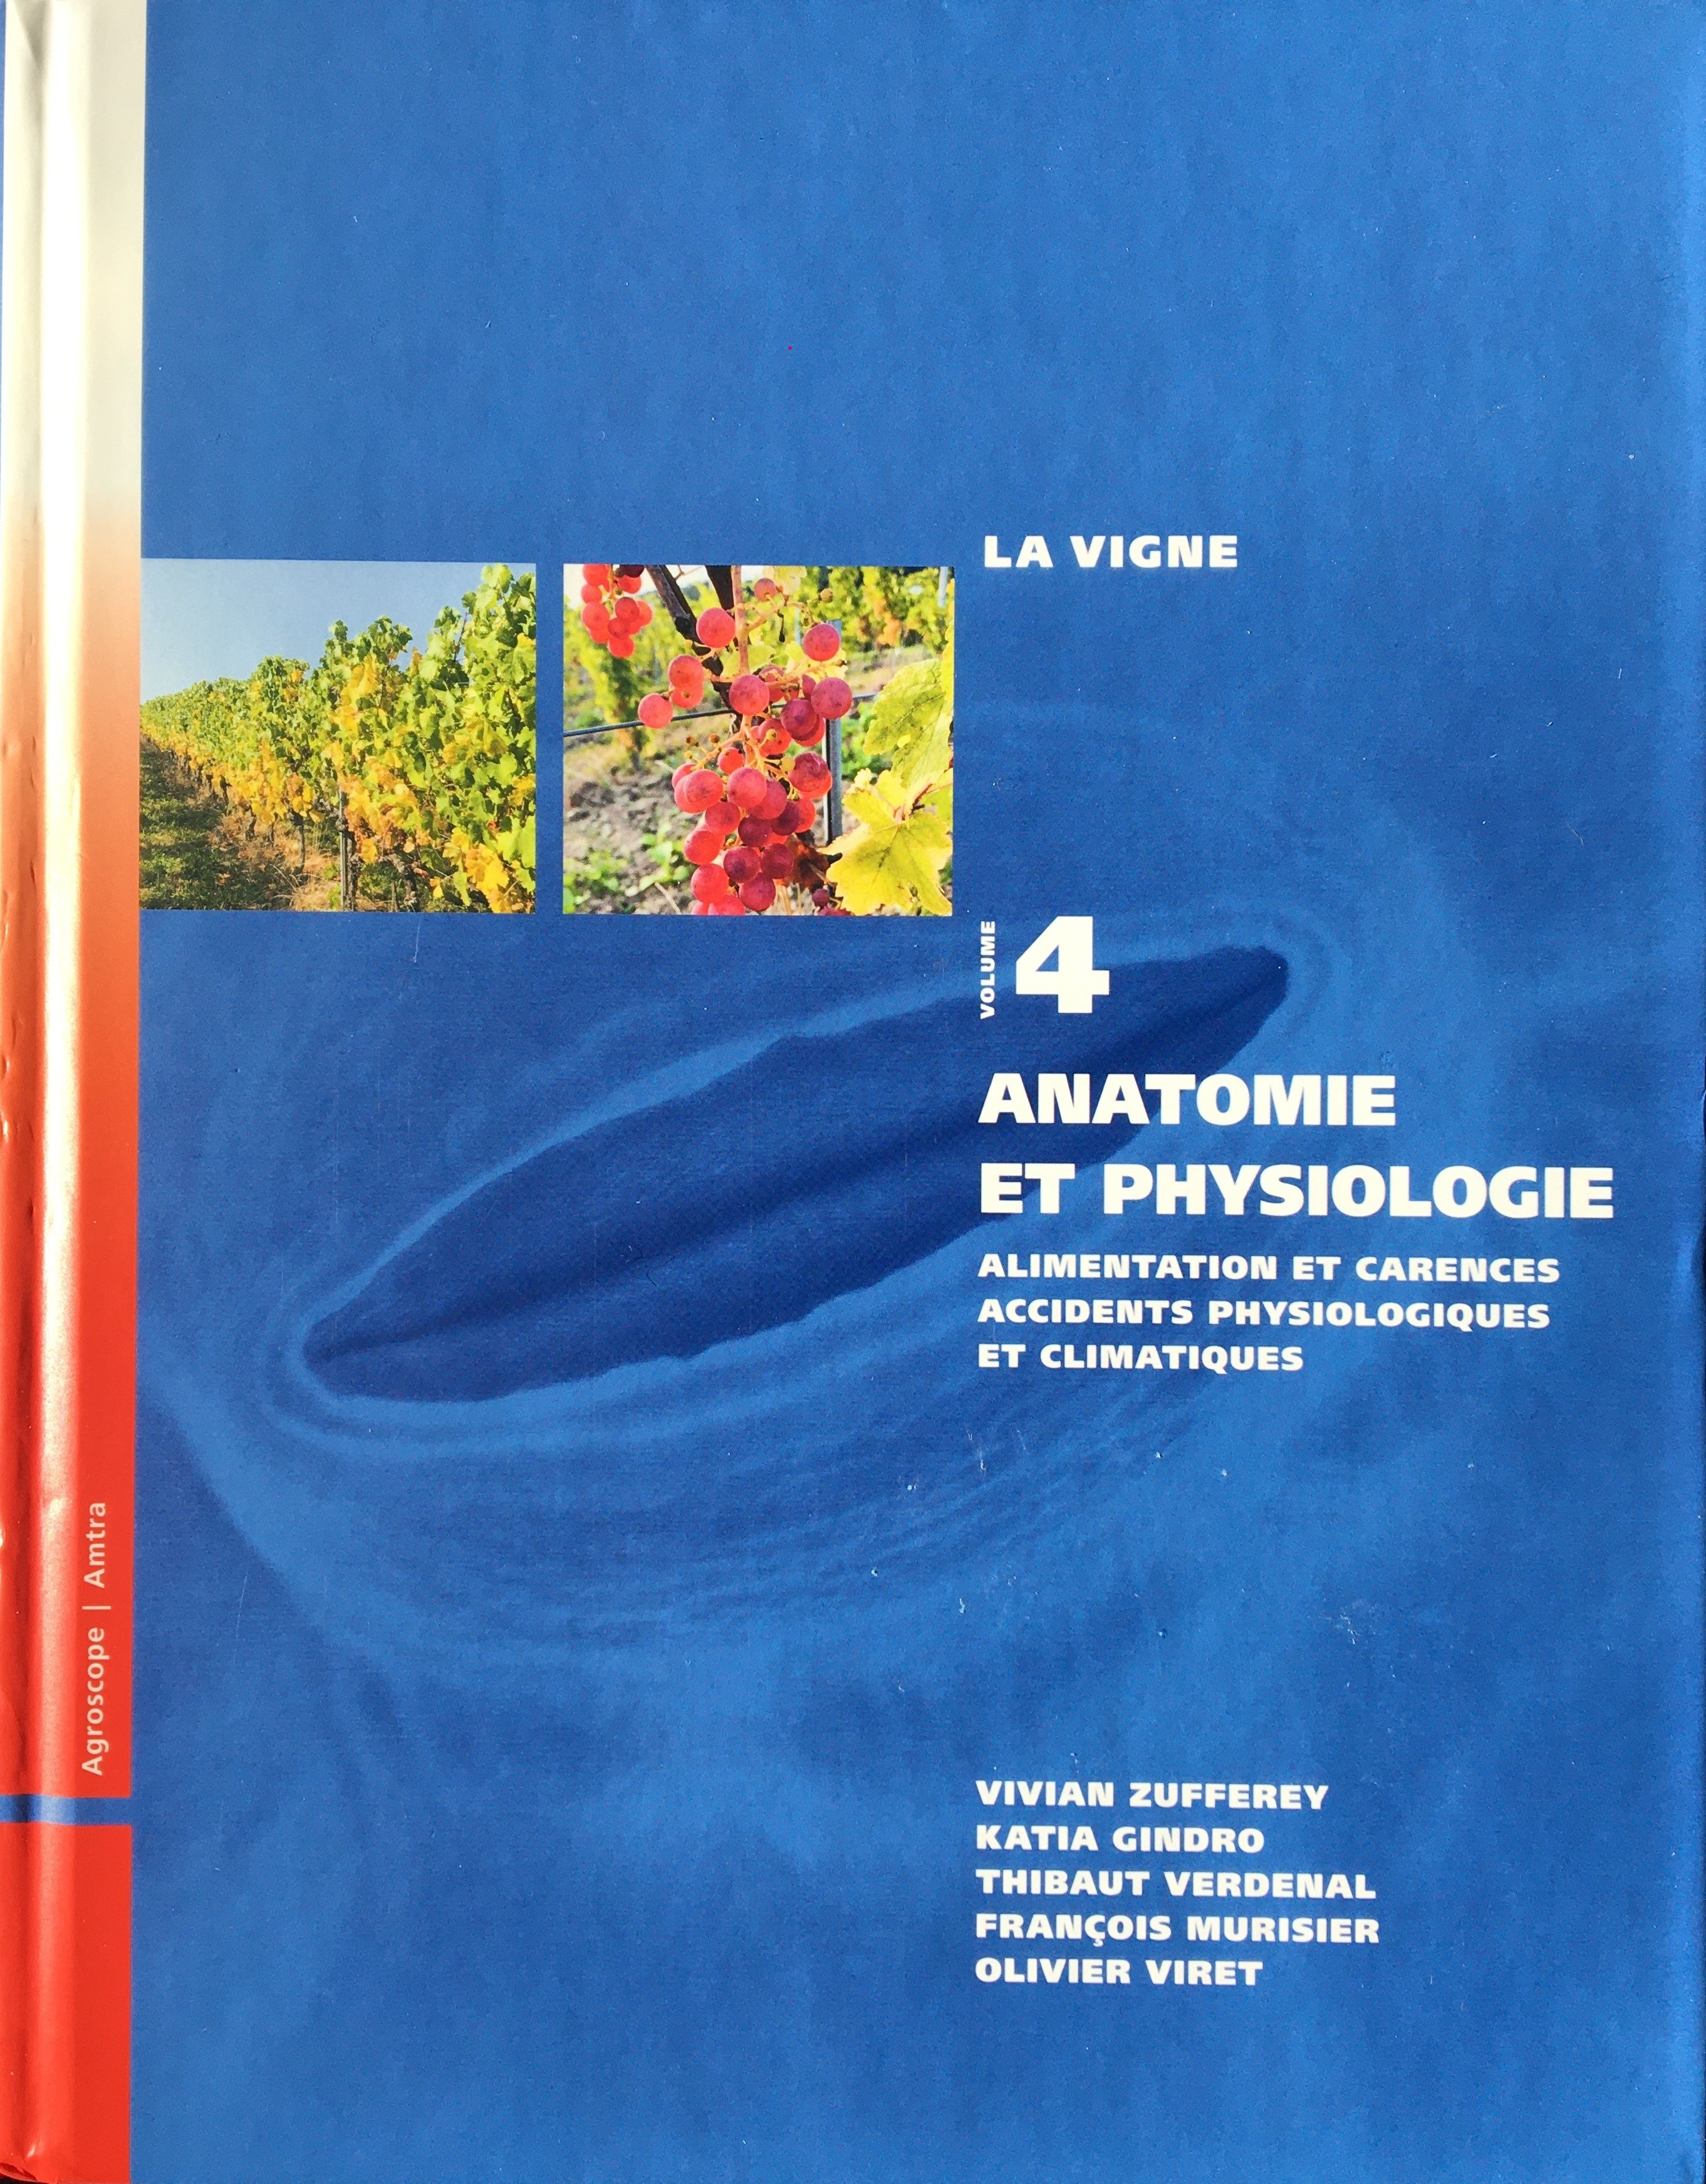 La Vigne - Anatomie et physiologie : alimentation et carences, accidents physiologiques et climatiques / Vol.4